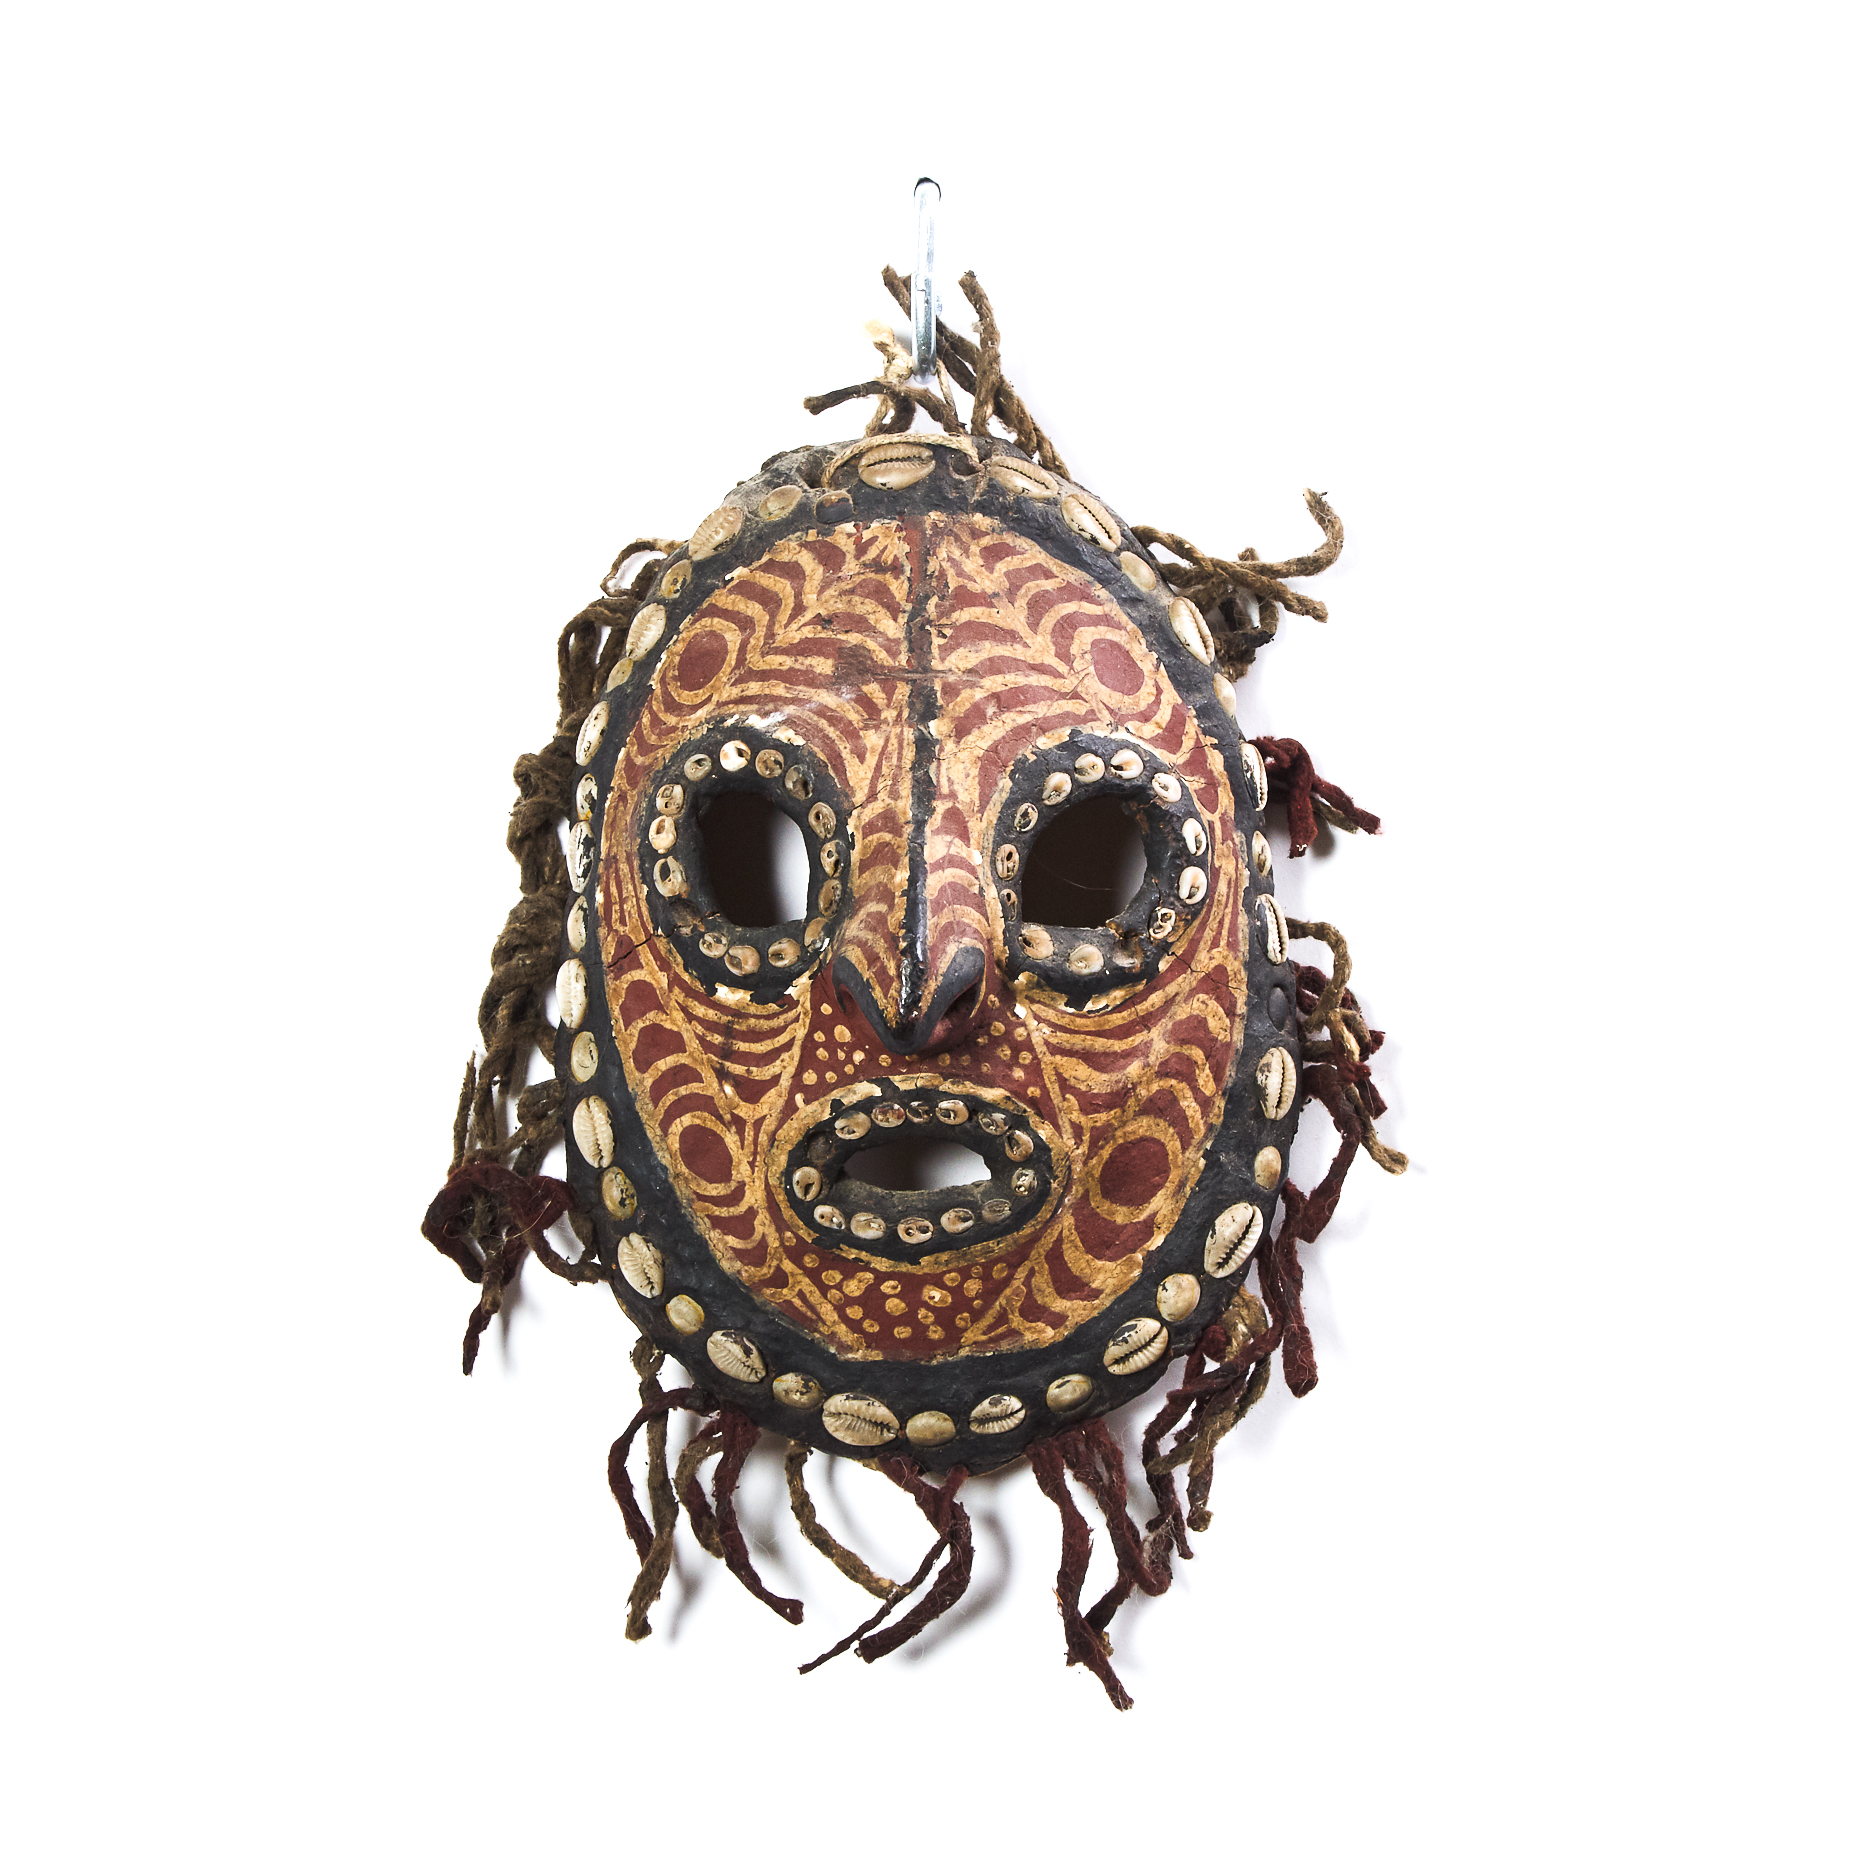 Sepik River Turtle Shell Mask, Papua New Guinea